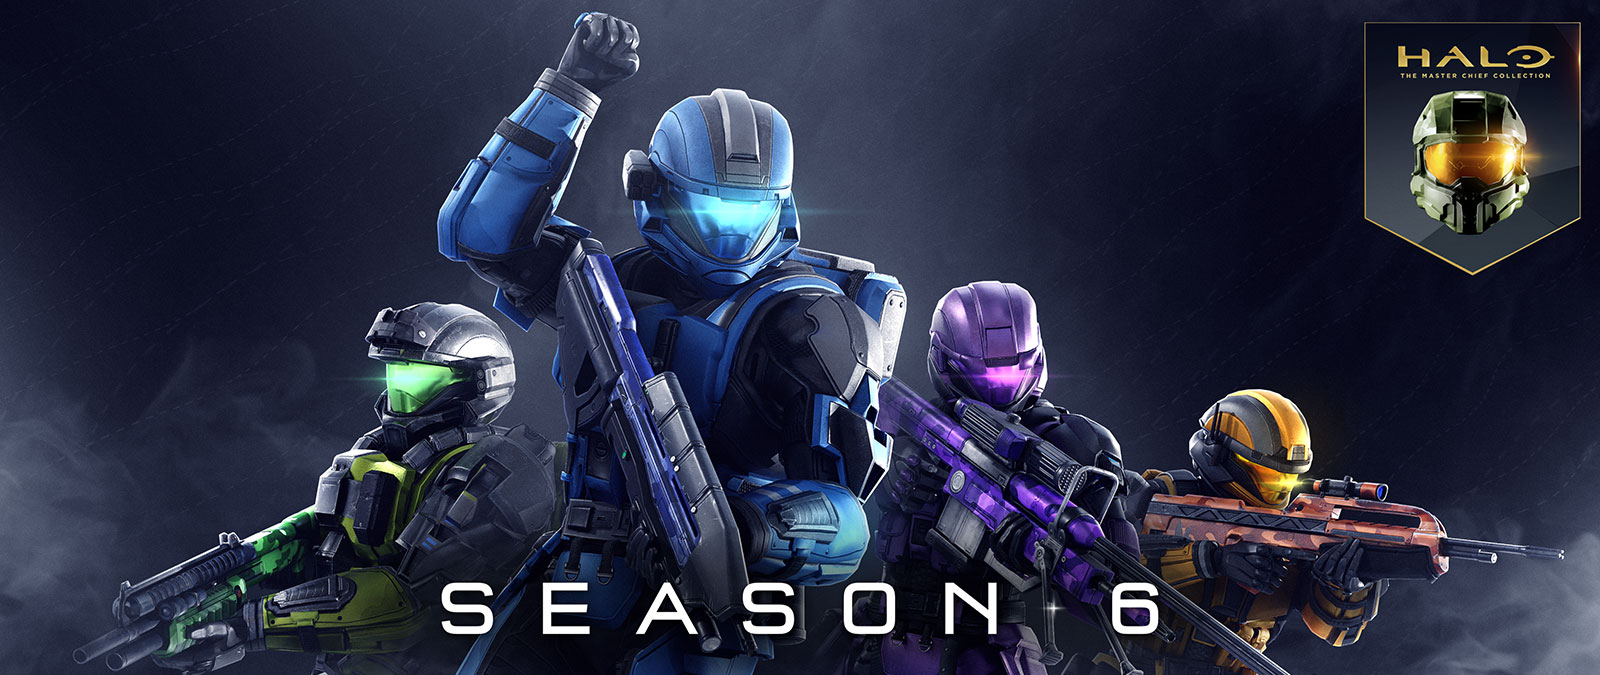 Halo: «Коллекция Мастера Чифа», 6 сезон, спартанцы в разноцветных доспехах позируют с оружием